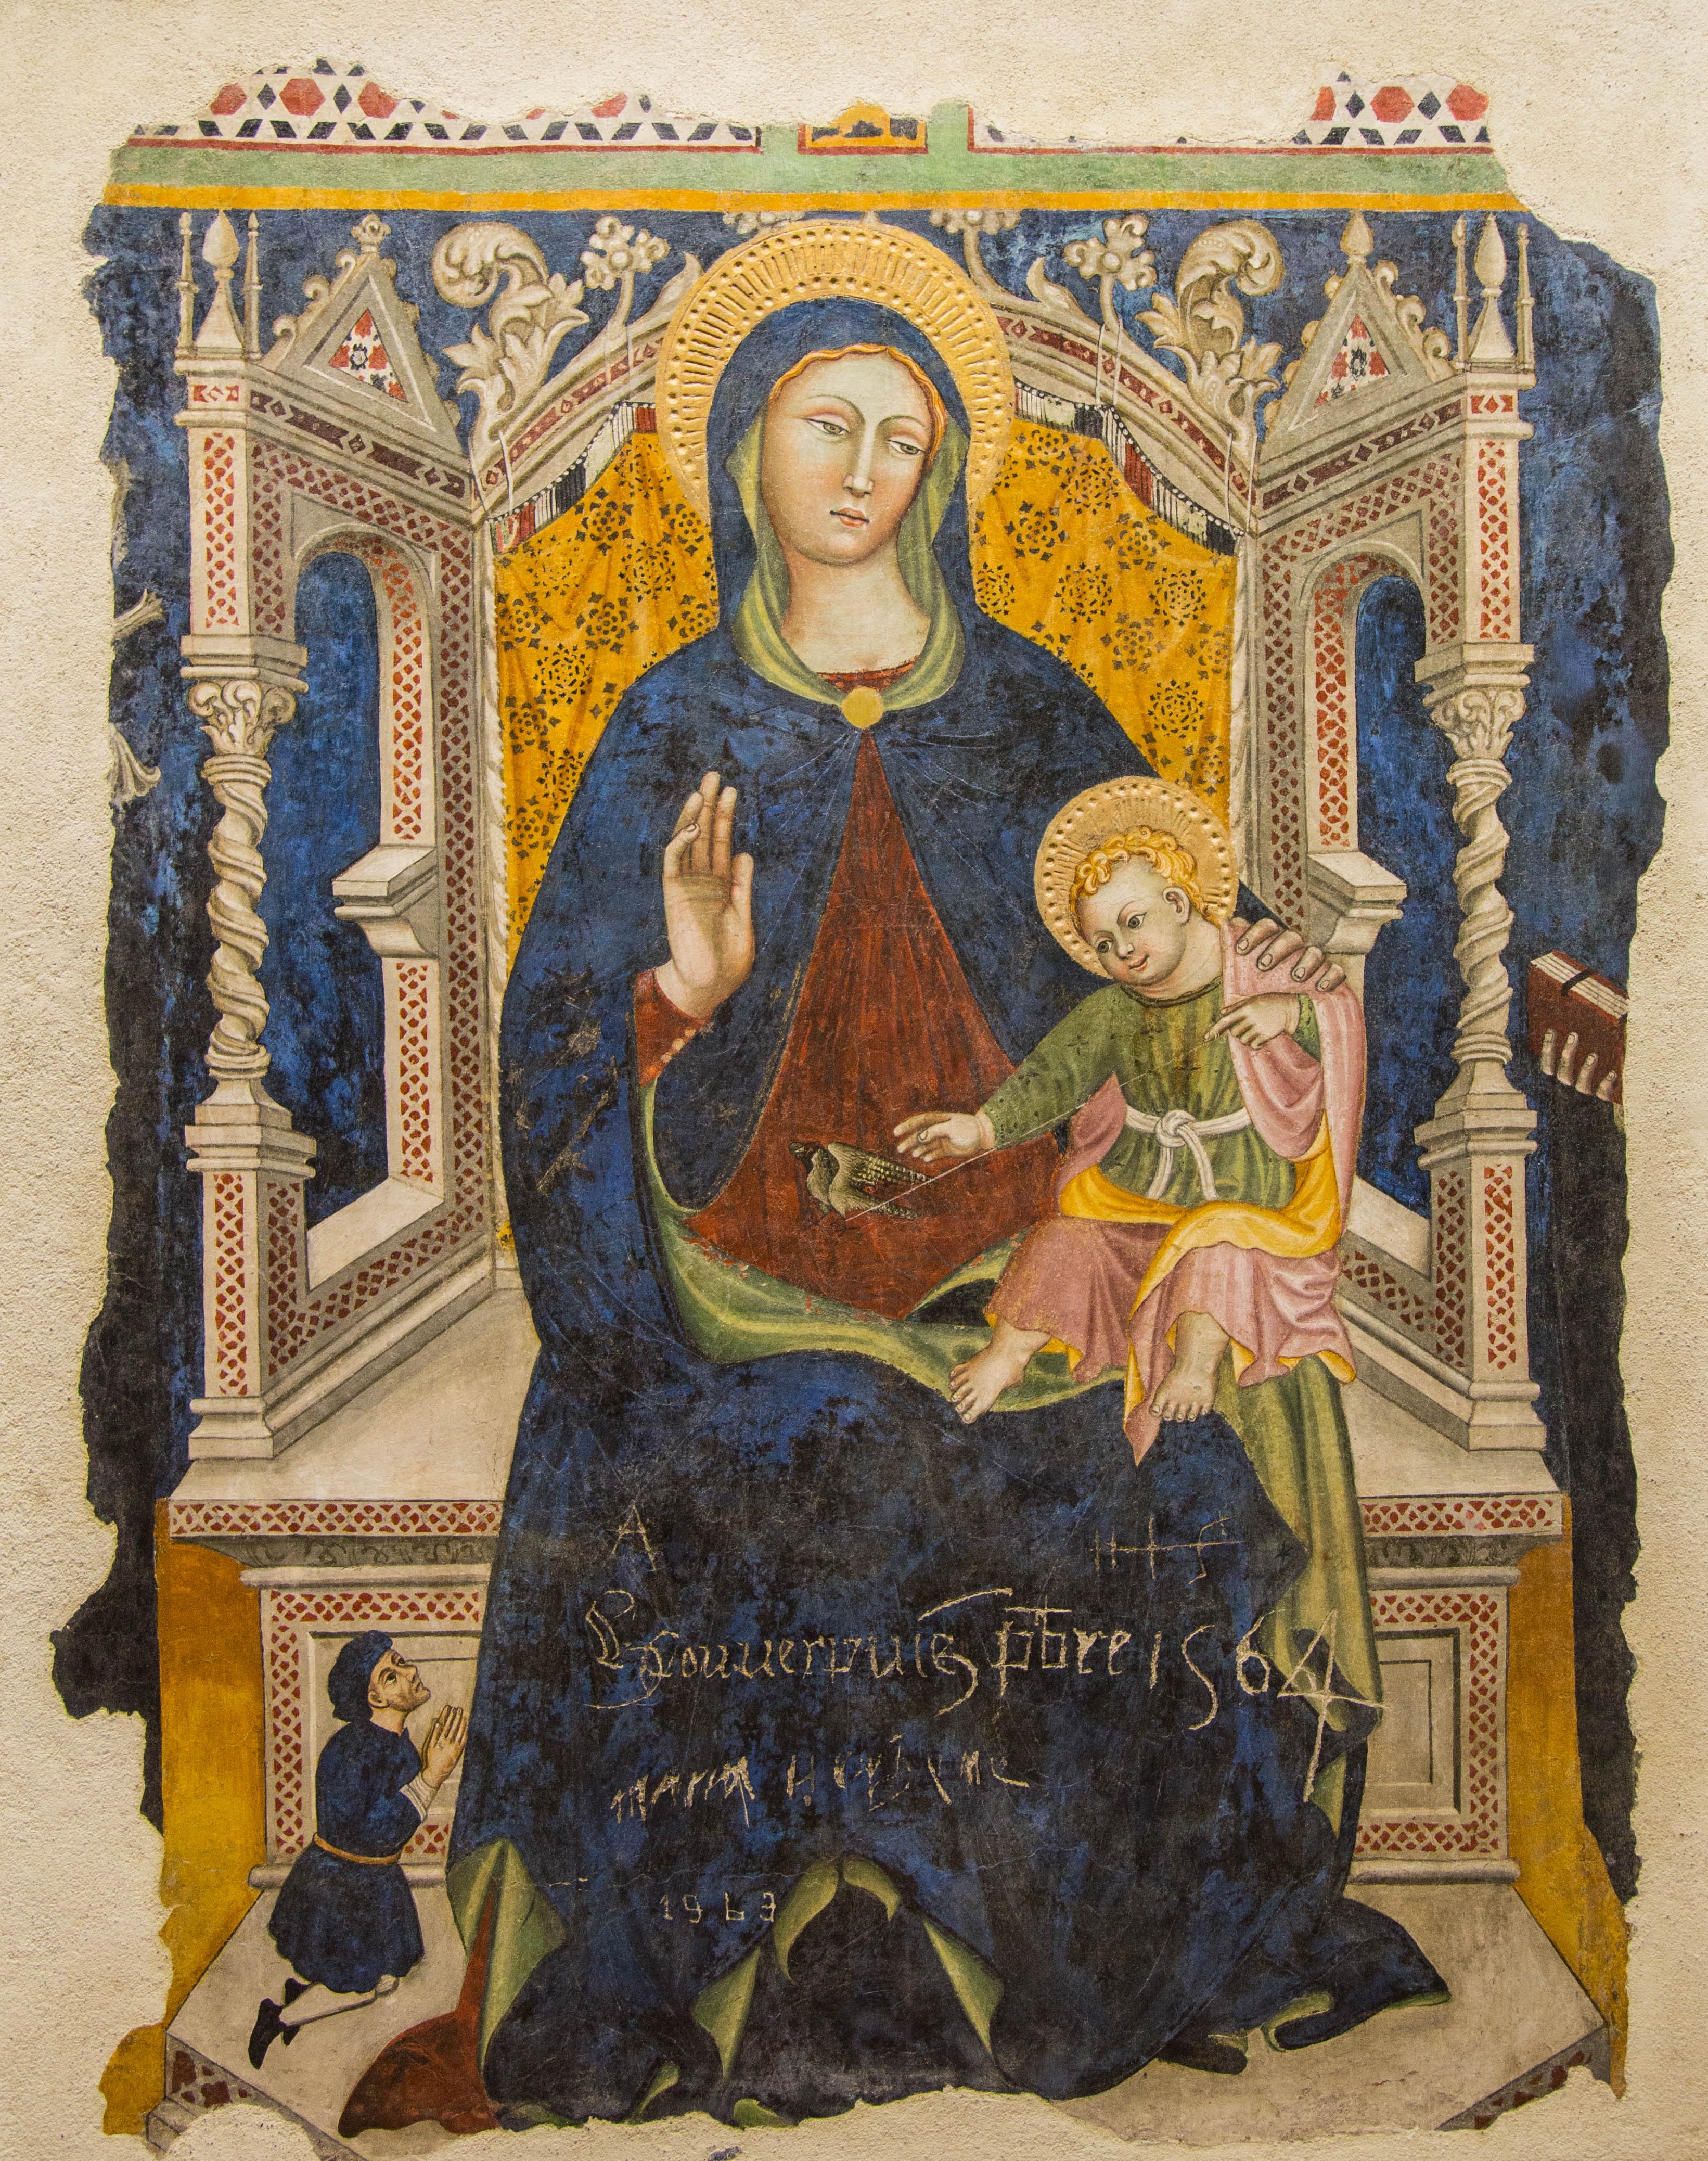 1440-60 Francesco d'Antonio da Viterbo, Madonna del cardellino Museo Civico, Viterbo église Santa Maria in Gradi